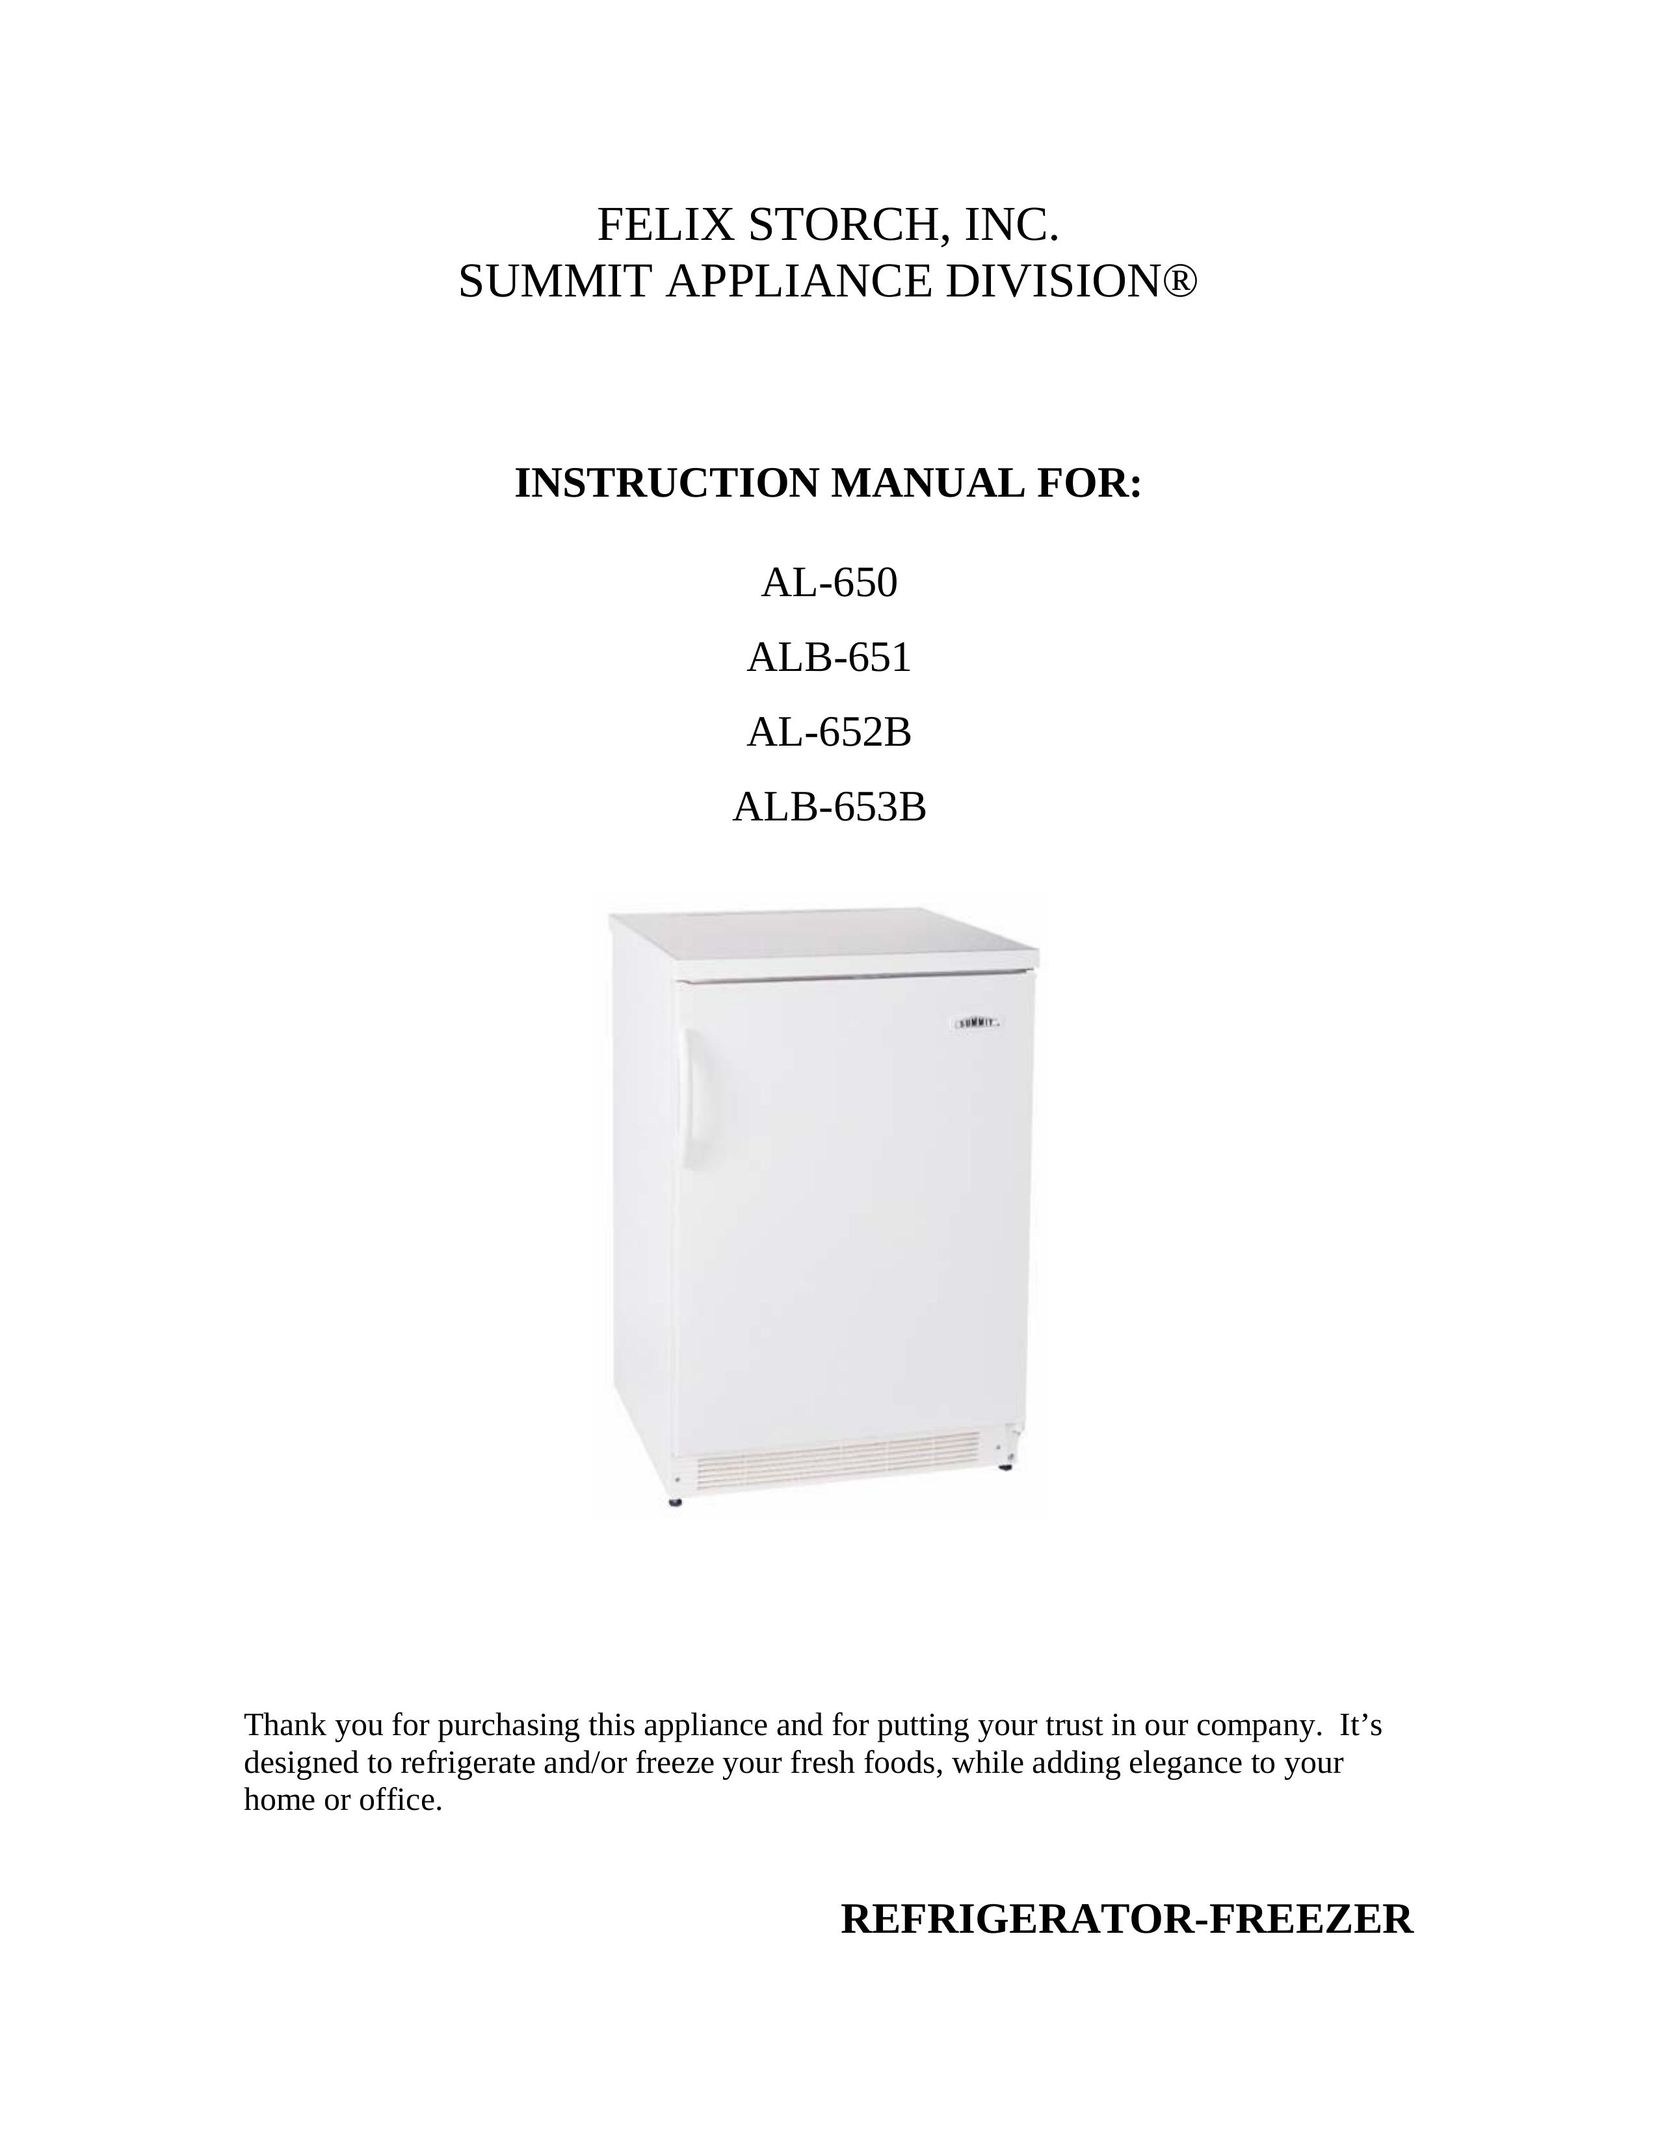 Summit ALB-651 Freezer User Manual